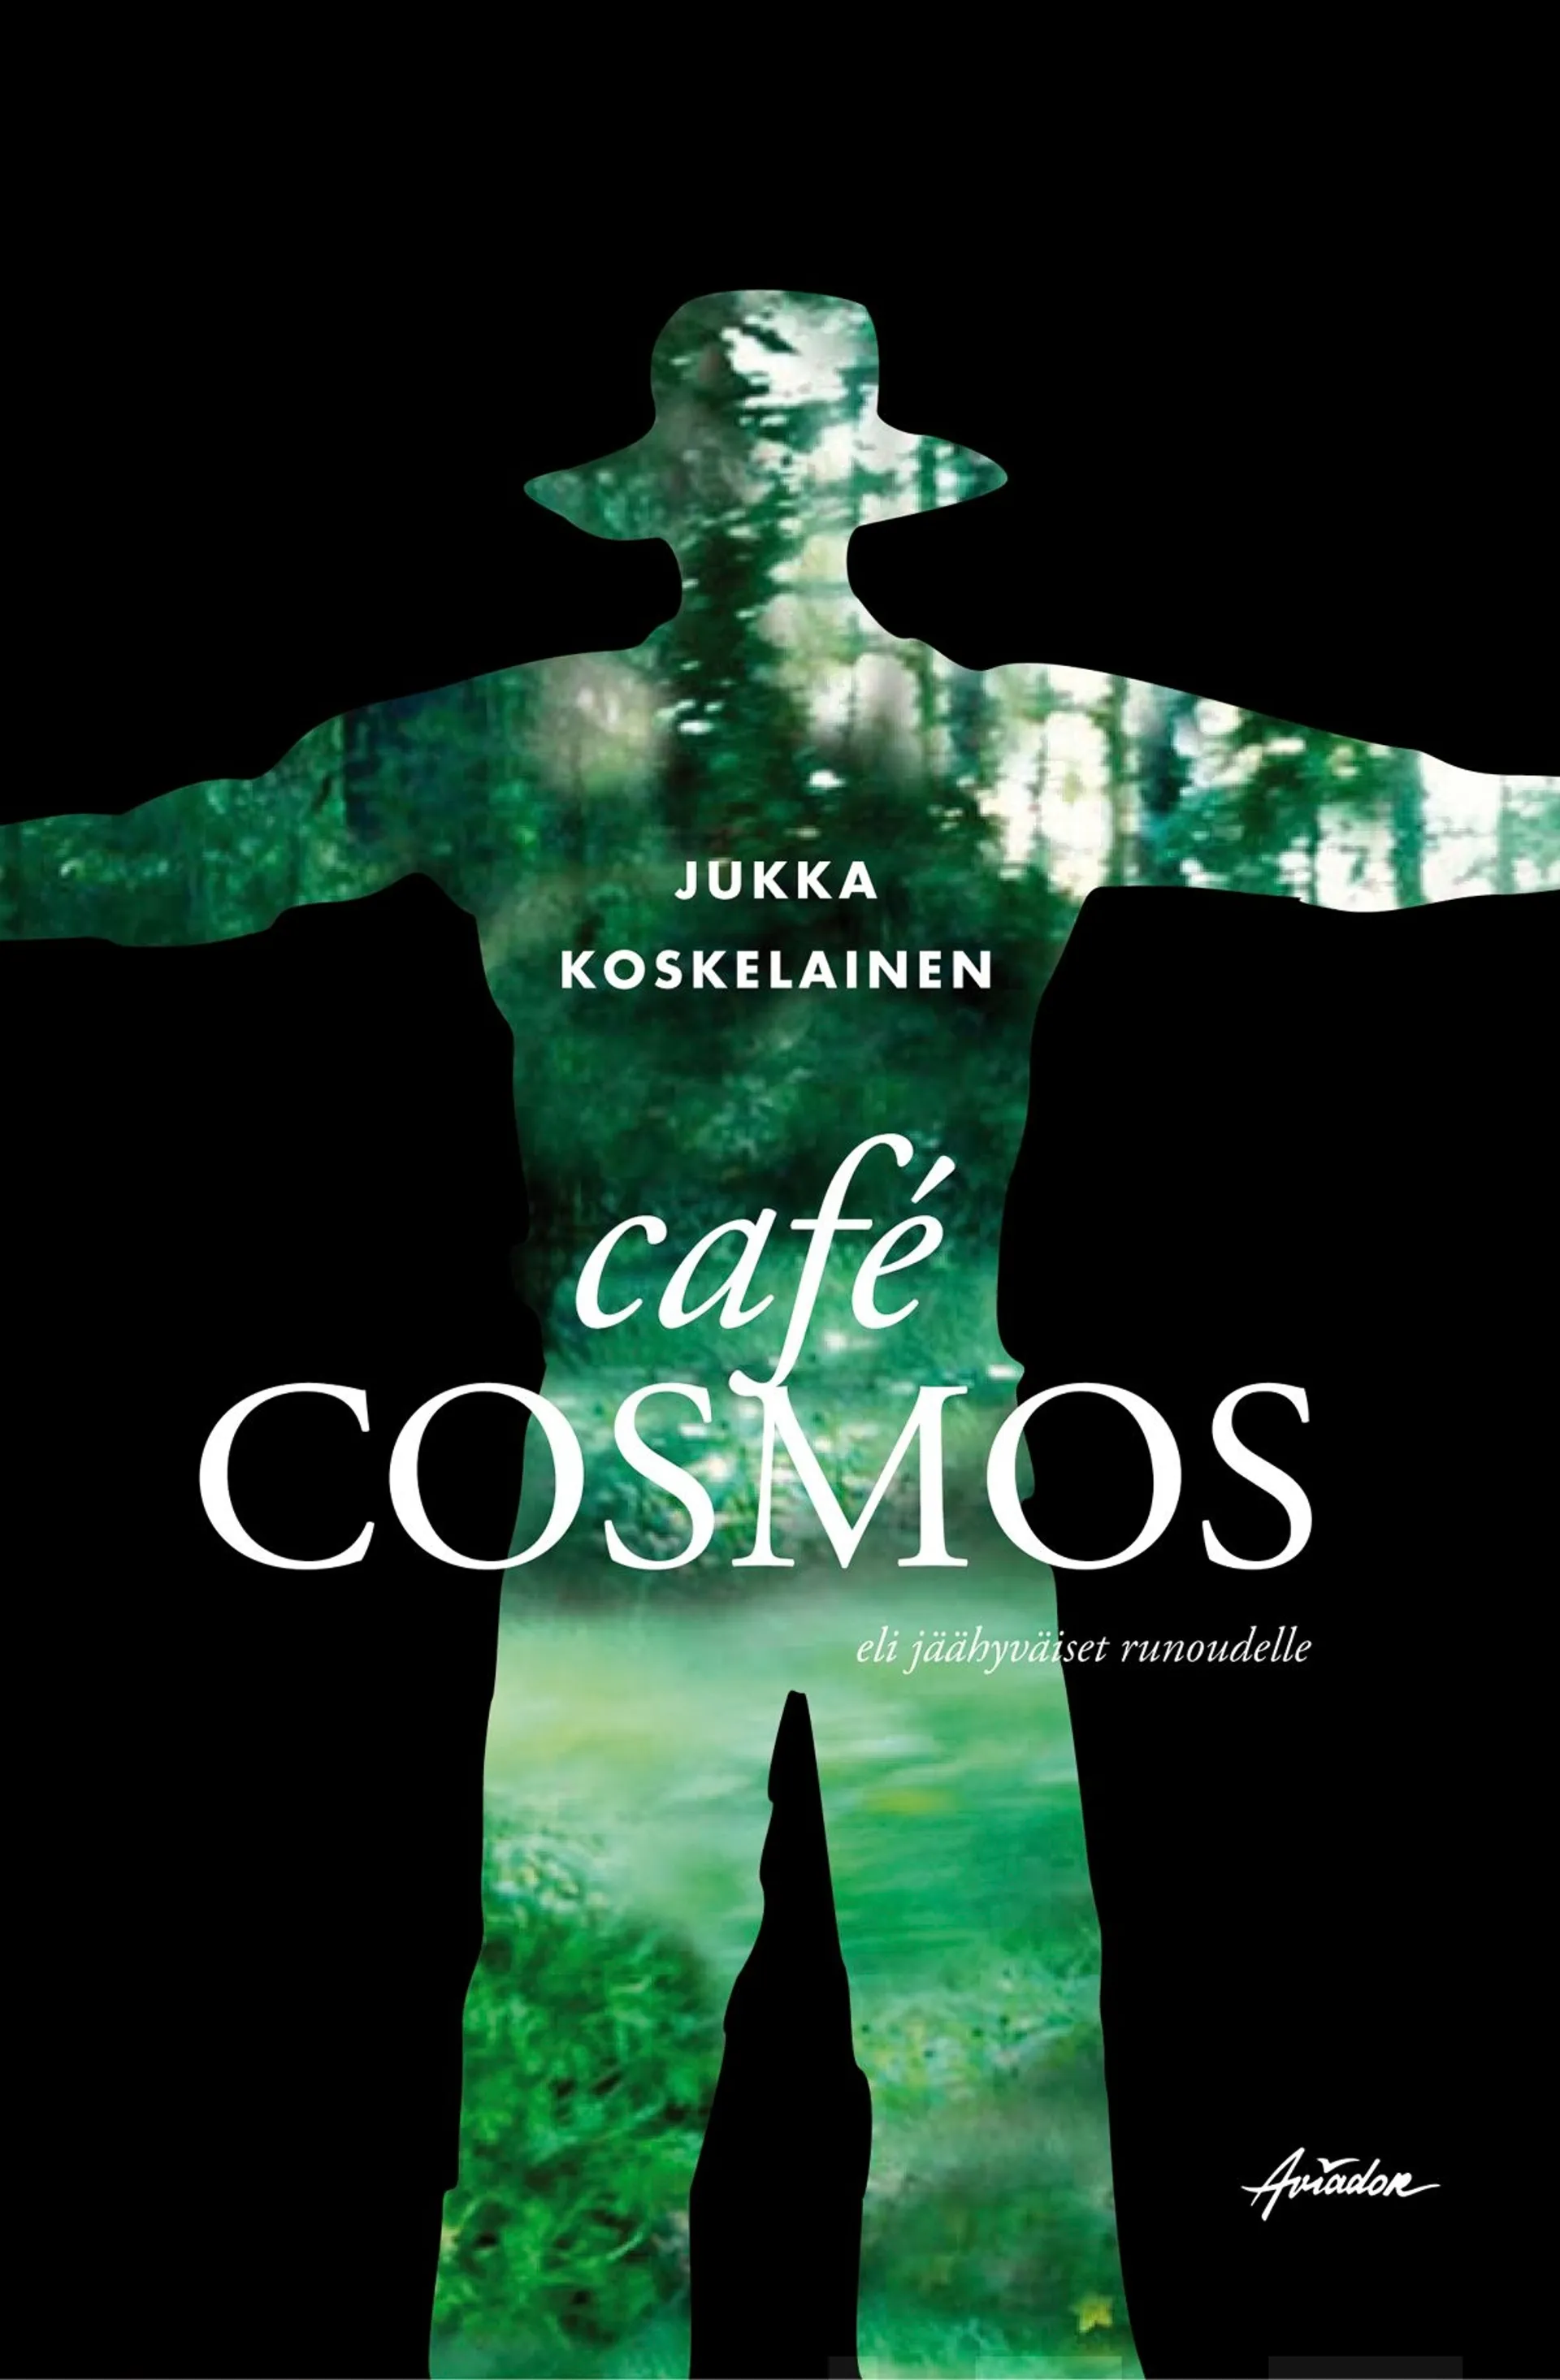 Koskelainen, Café Cosmos eli jäähyväiset runoudelle